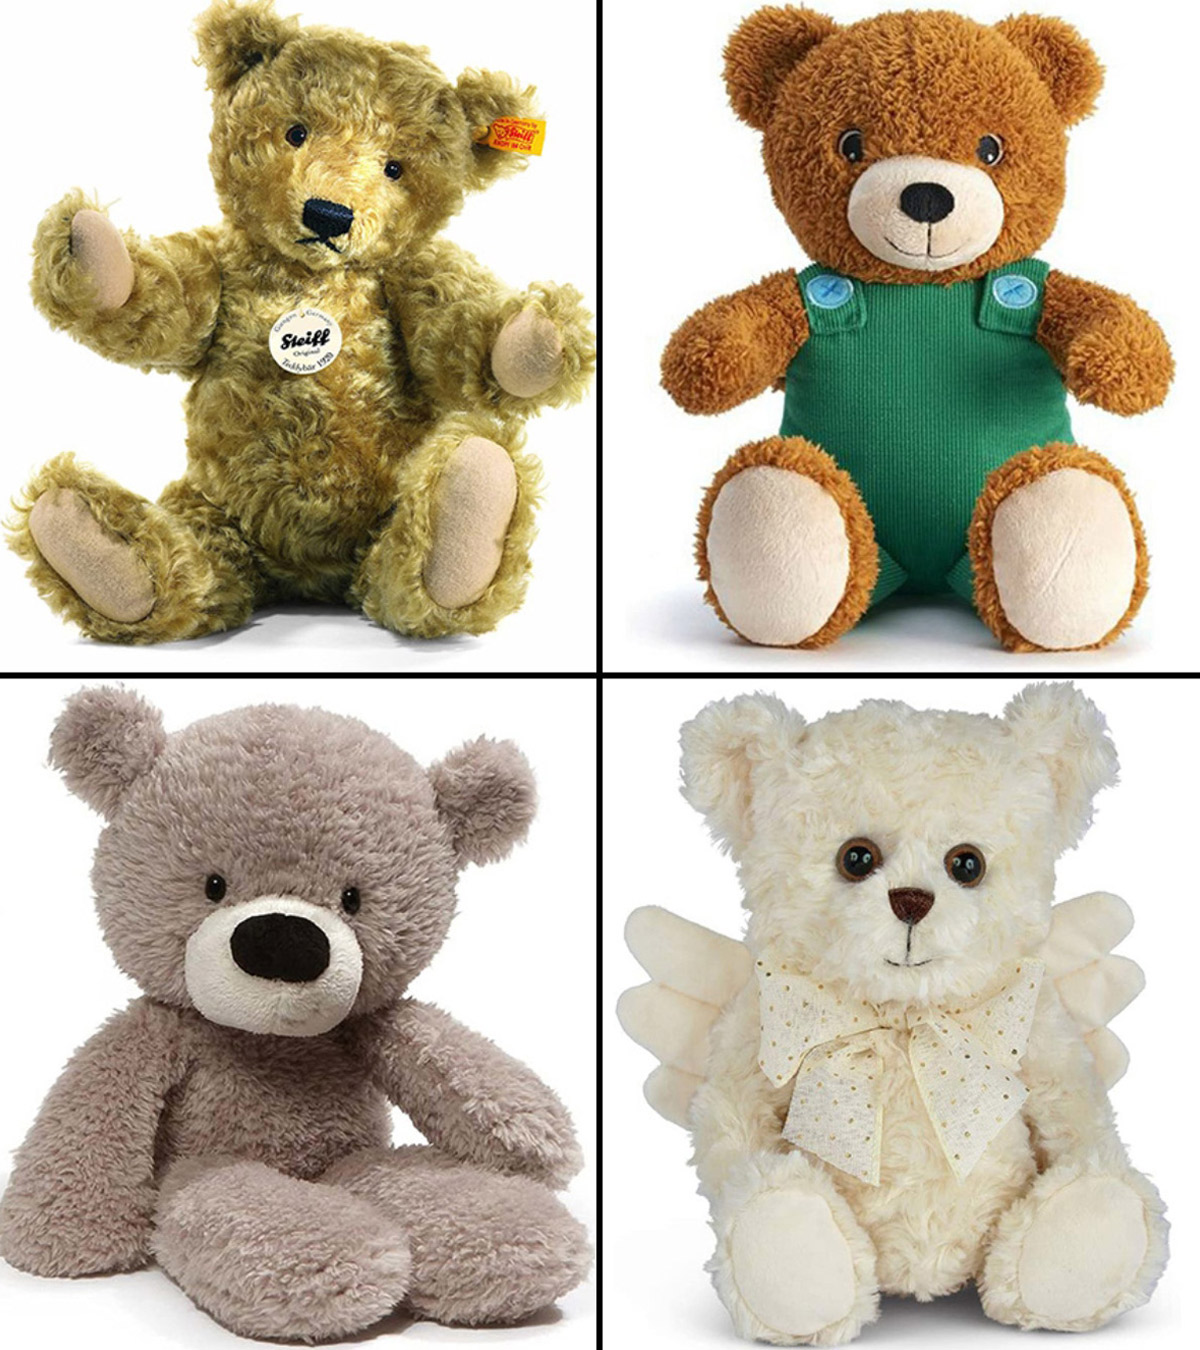 Most expensive teddy bear? #digitalsandy #teddybear 